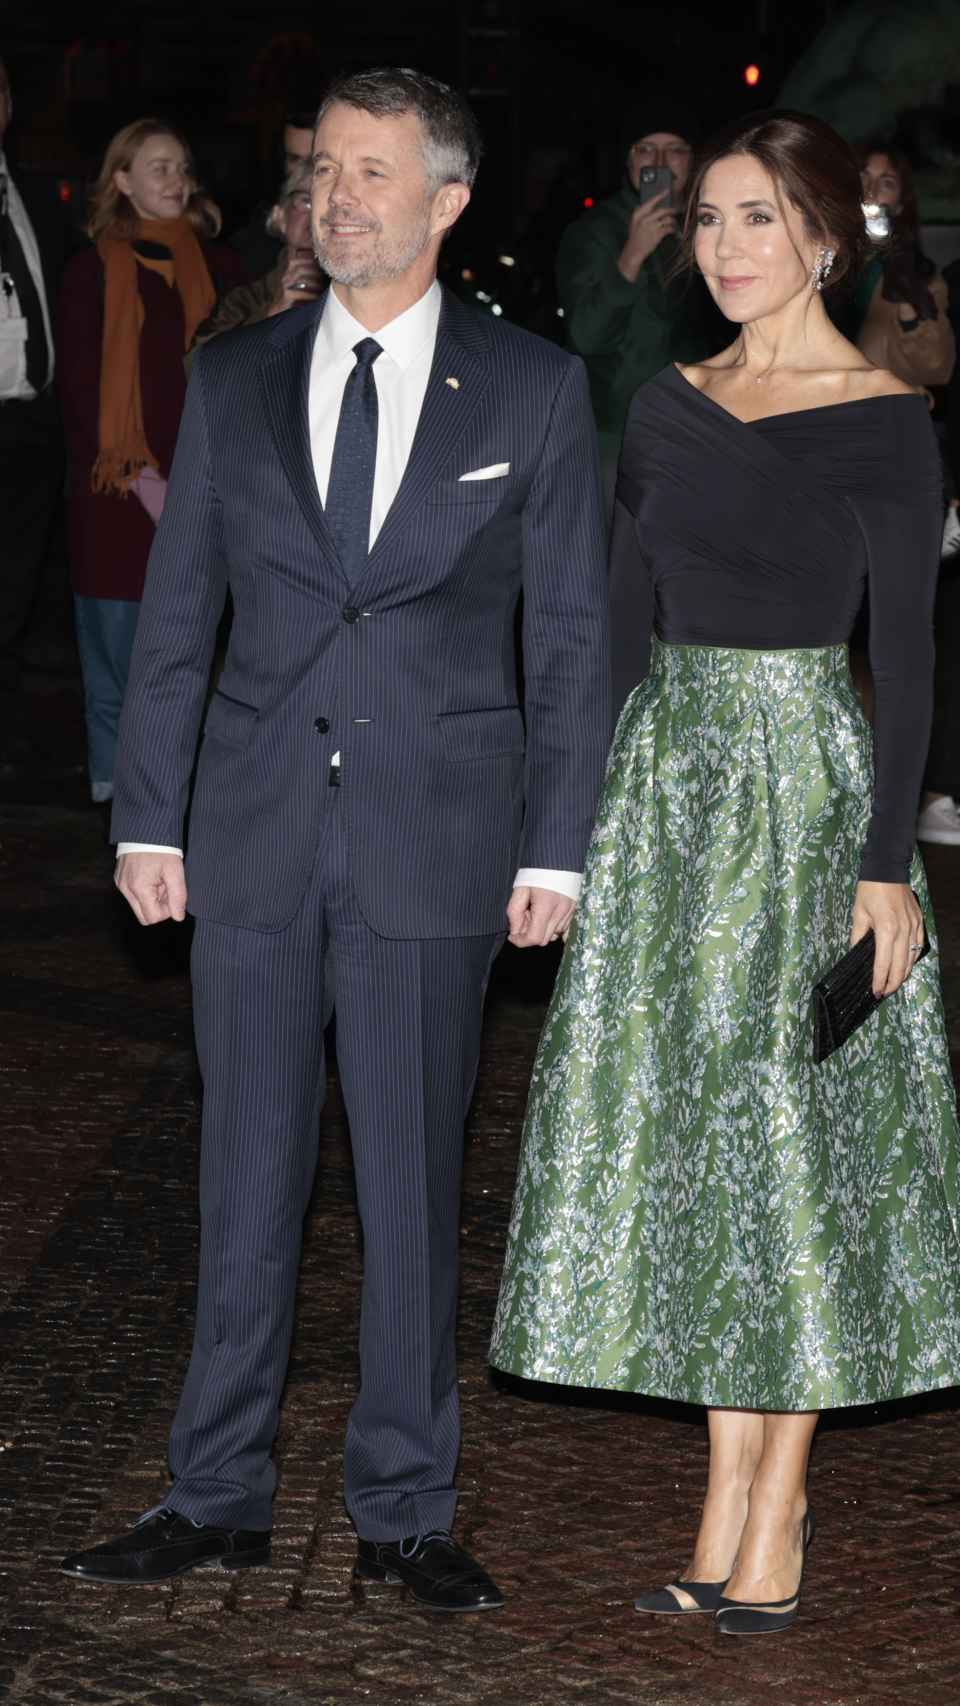 Federico de Dinamarca y su esposa, Mary, en una fotografía tomada tras el escándalo en España.